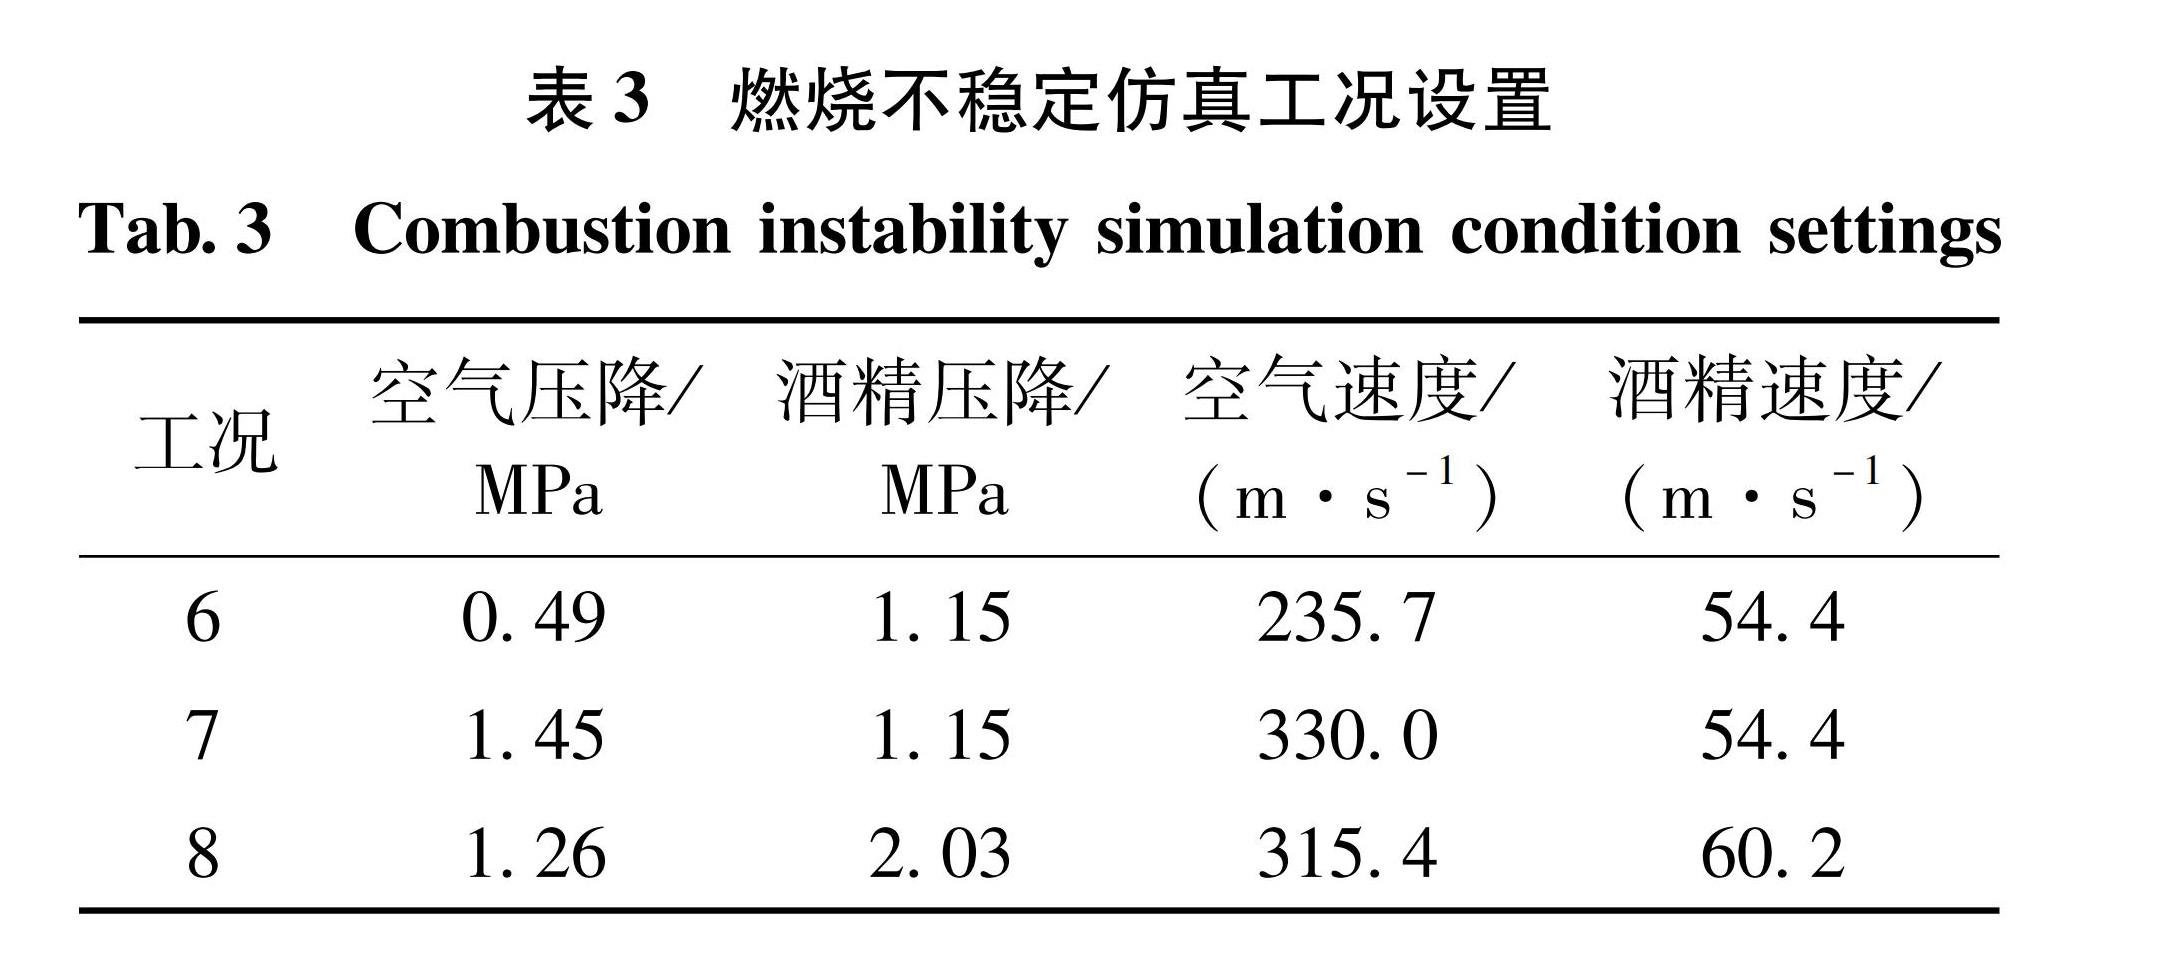 表3 燃烧不稳定仿真工况设置<br/>Tab.3 Combustion instability simulation condition settings